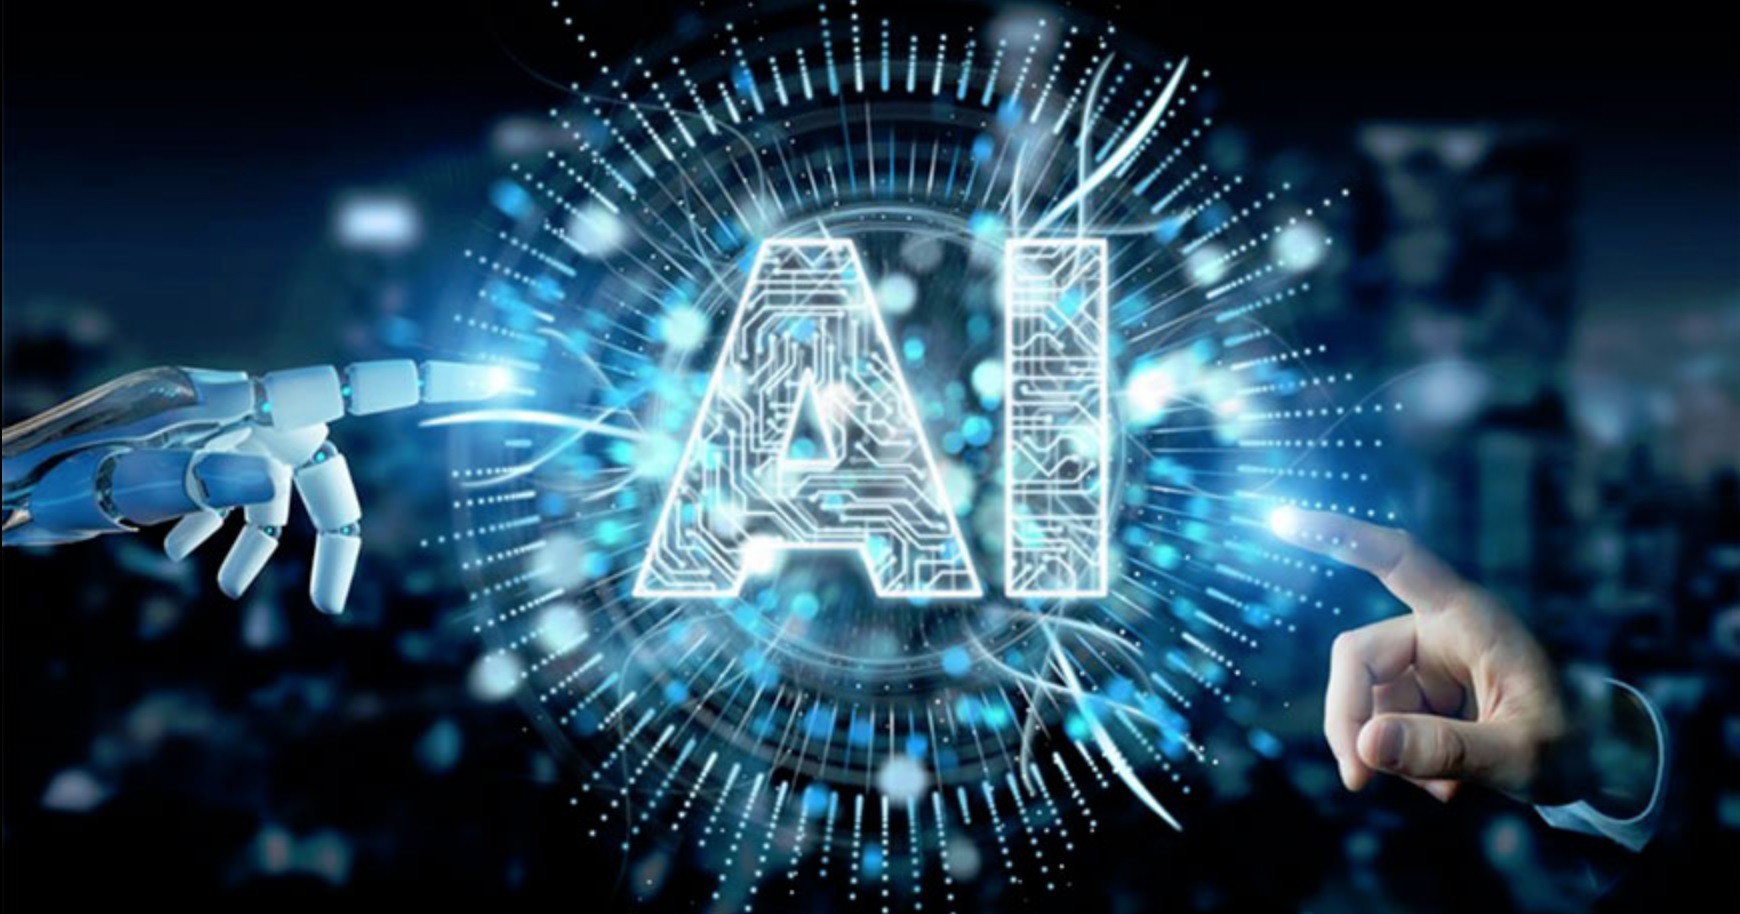 
Trí tuệ nhân tạo&nbsp;(AI) là một lĩnh vực công nghệ cấp cao mà thông qua máy móc, đặc biệt là hệ thống máy tính
